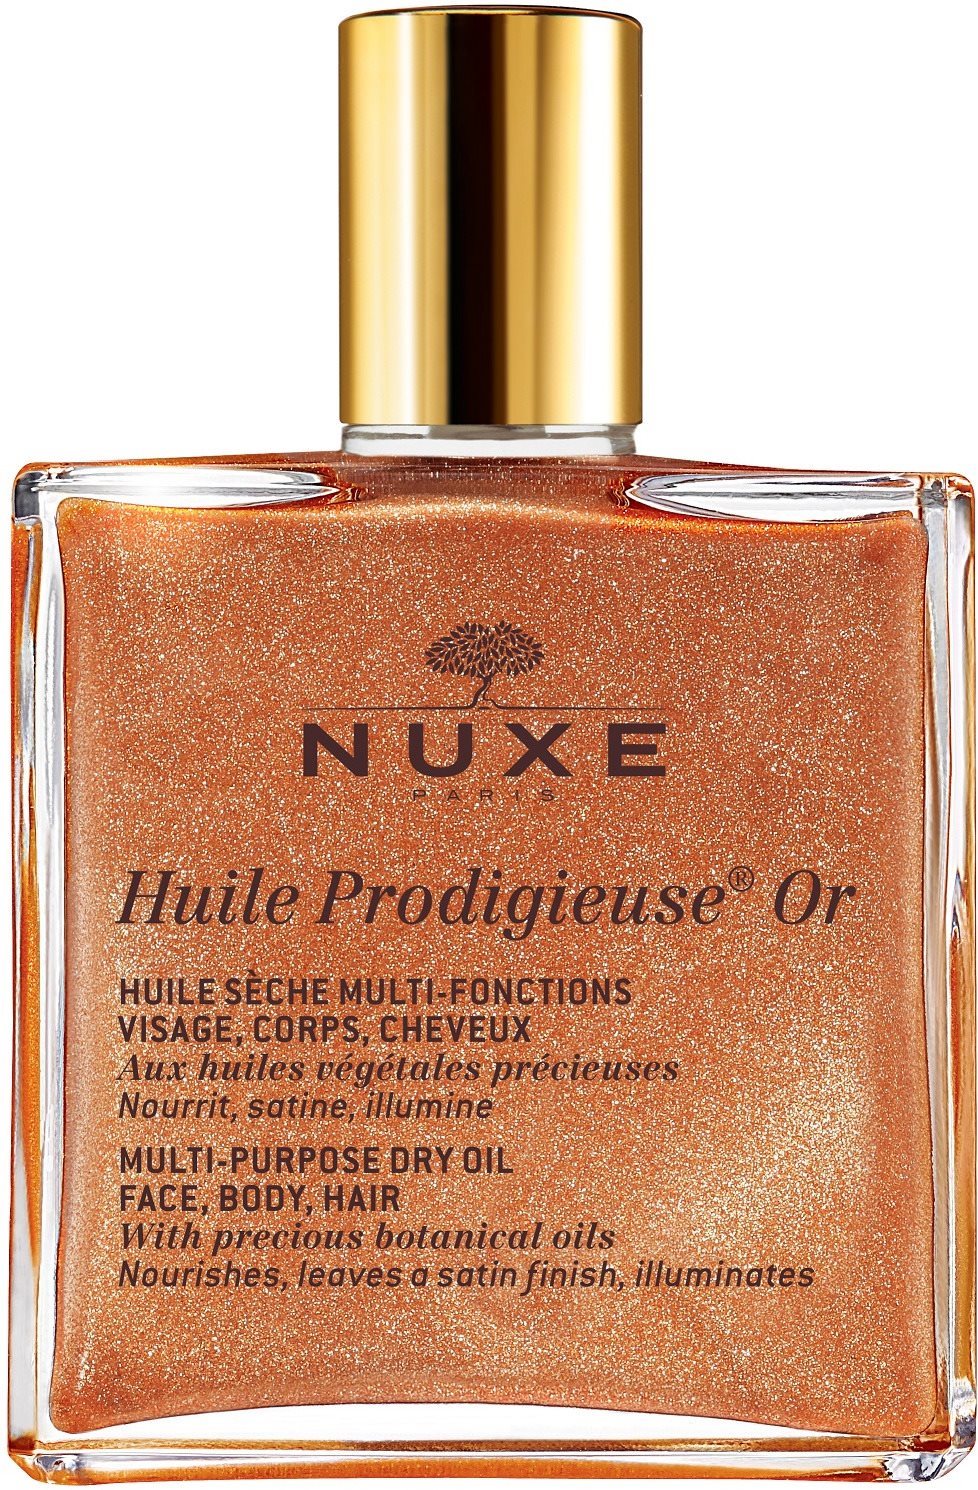 Masszázsolaj NUXE Huile Prodigieuse OR Multi-Purpose Dry Oil 50 ml